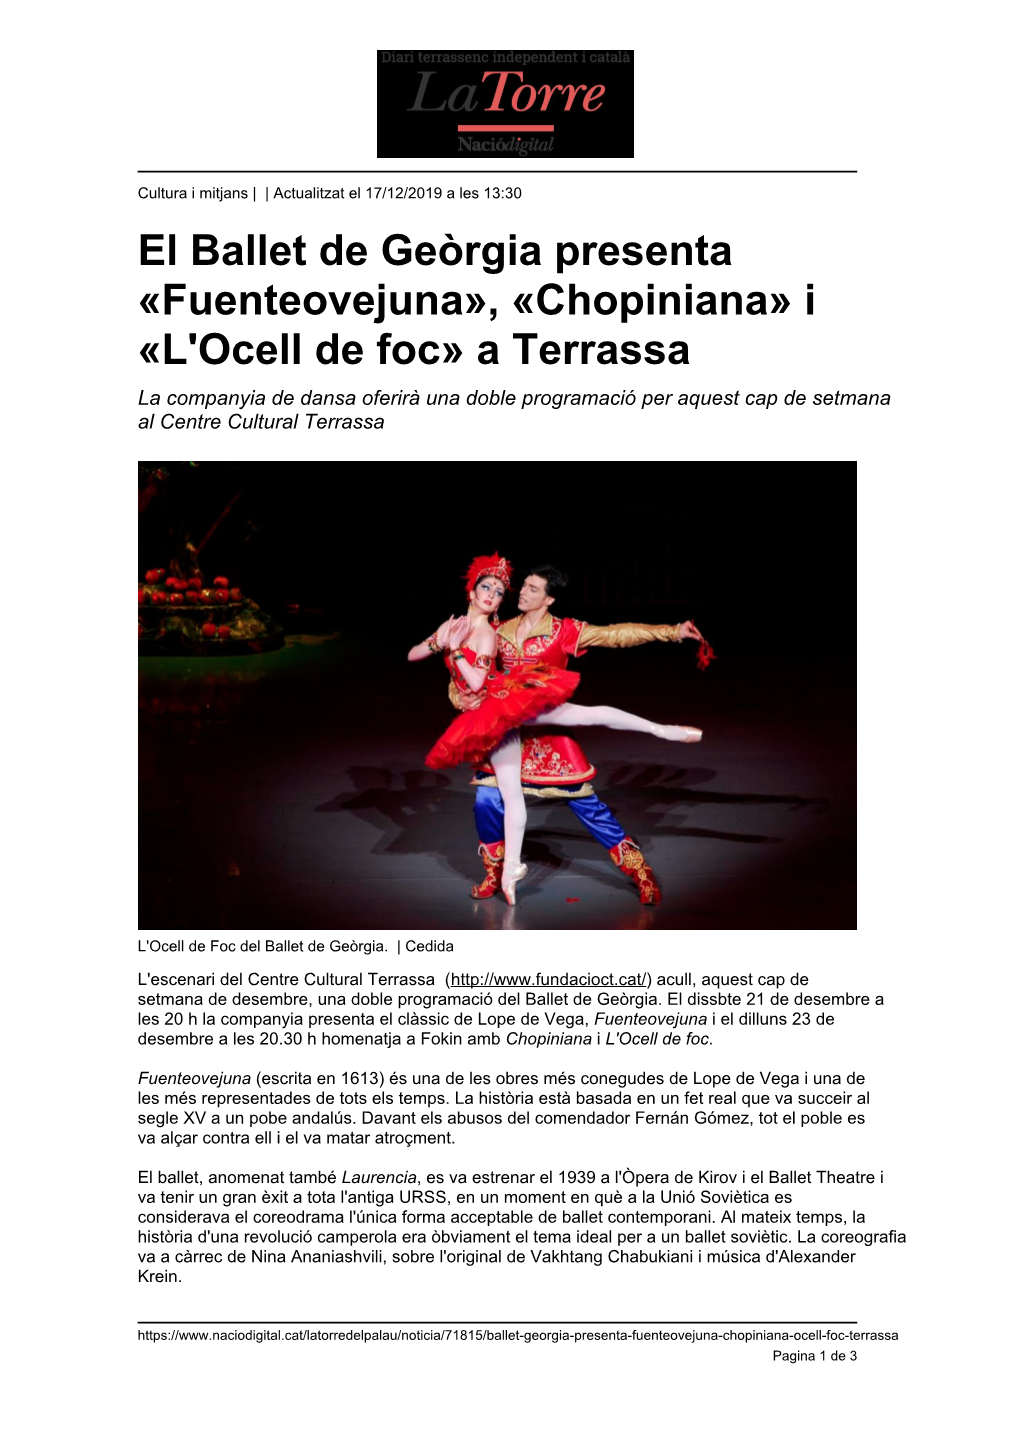 El Ballet De Geòrgia Presenta «Fuenteovejuna», «Chopiniana» I